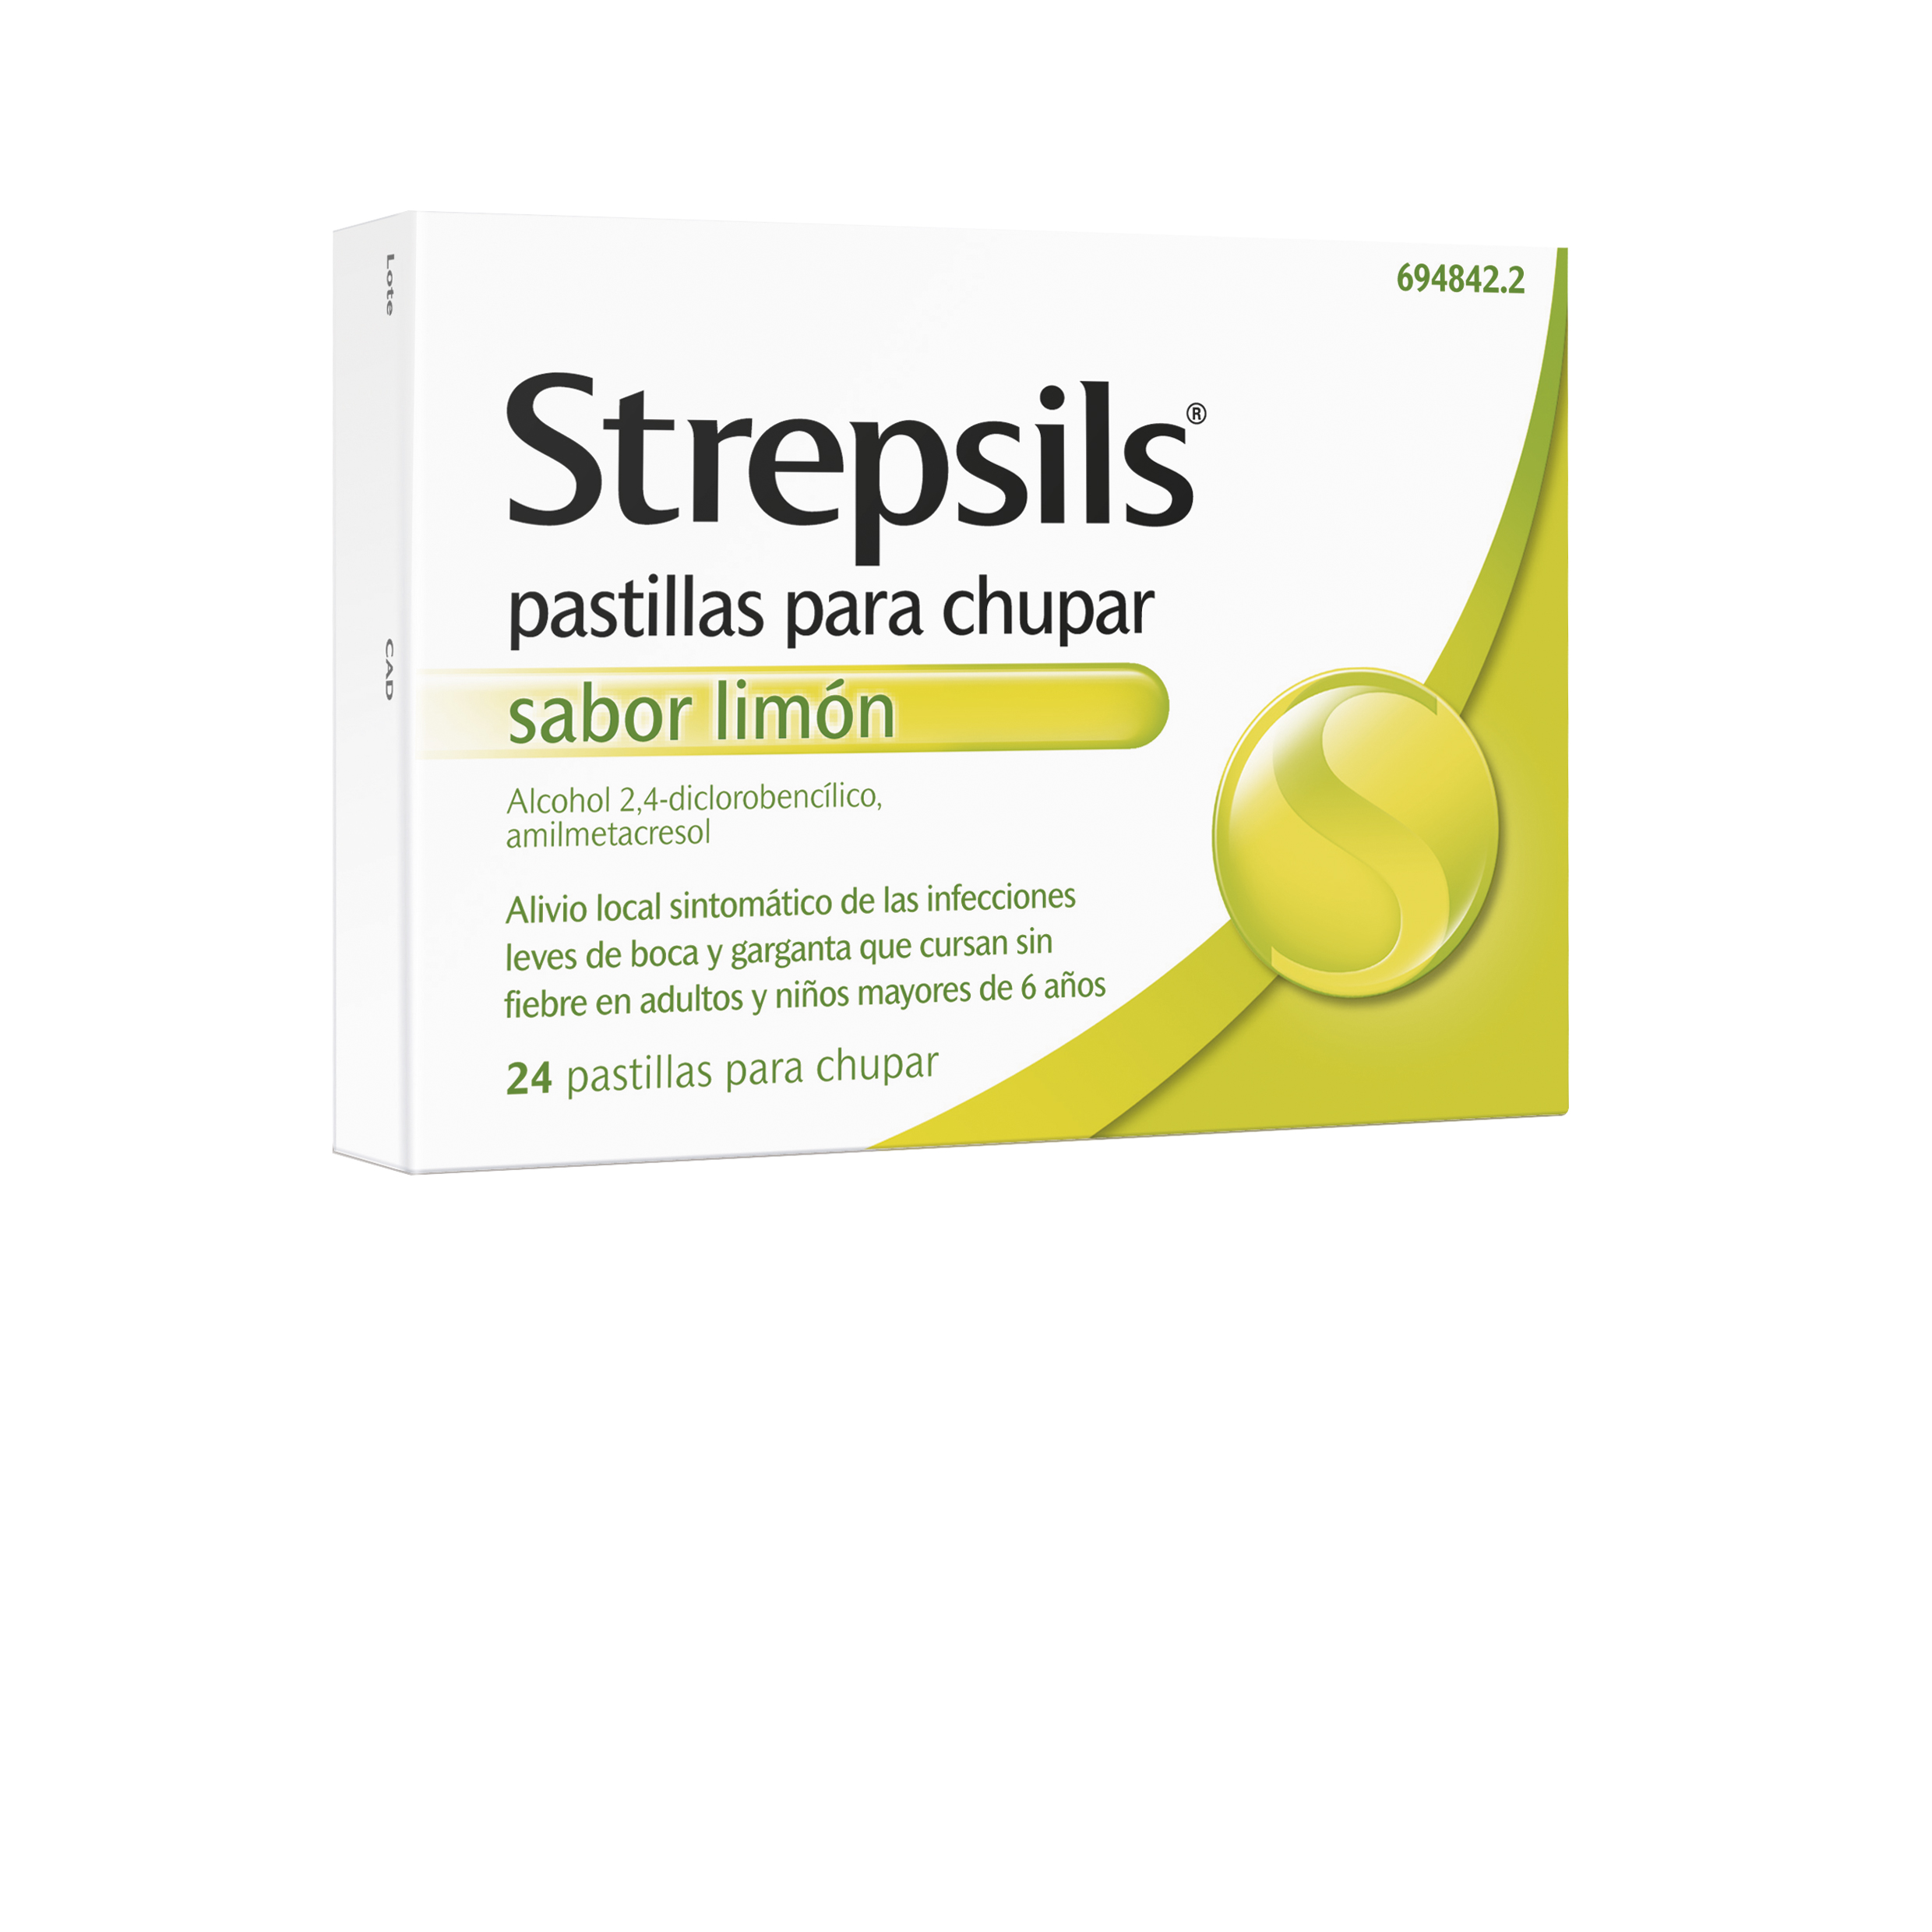 STREPSILS PASTILLAS PARA CHUPAR  SABOR LIMON, 24 pastillas para chupar                       